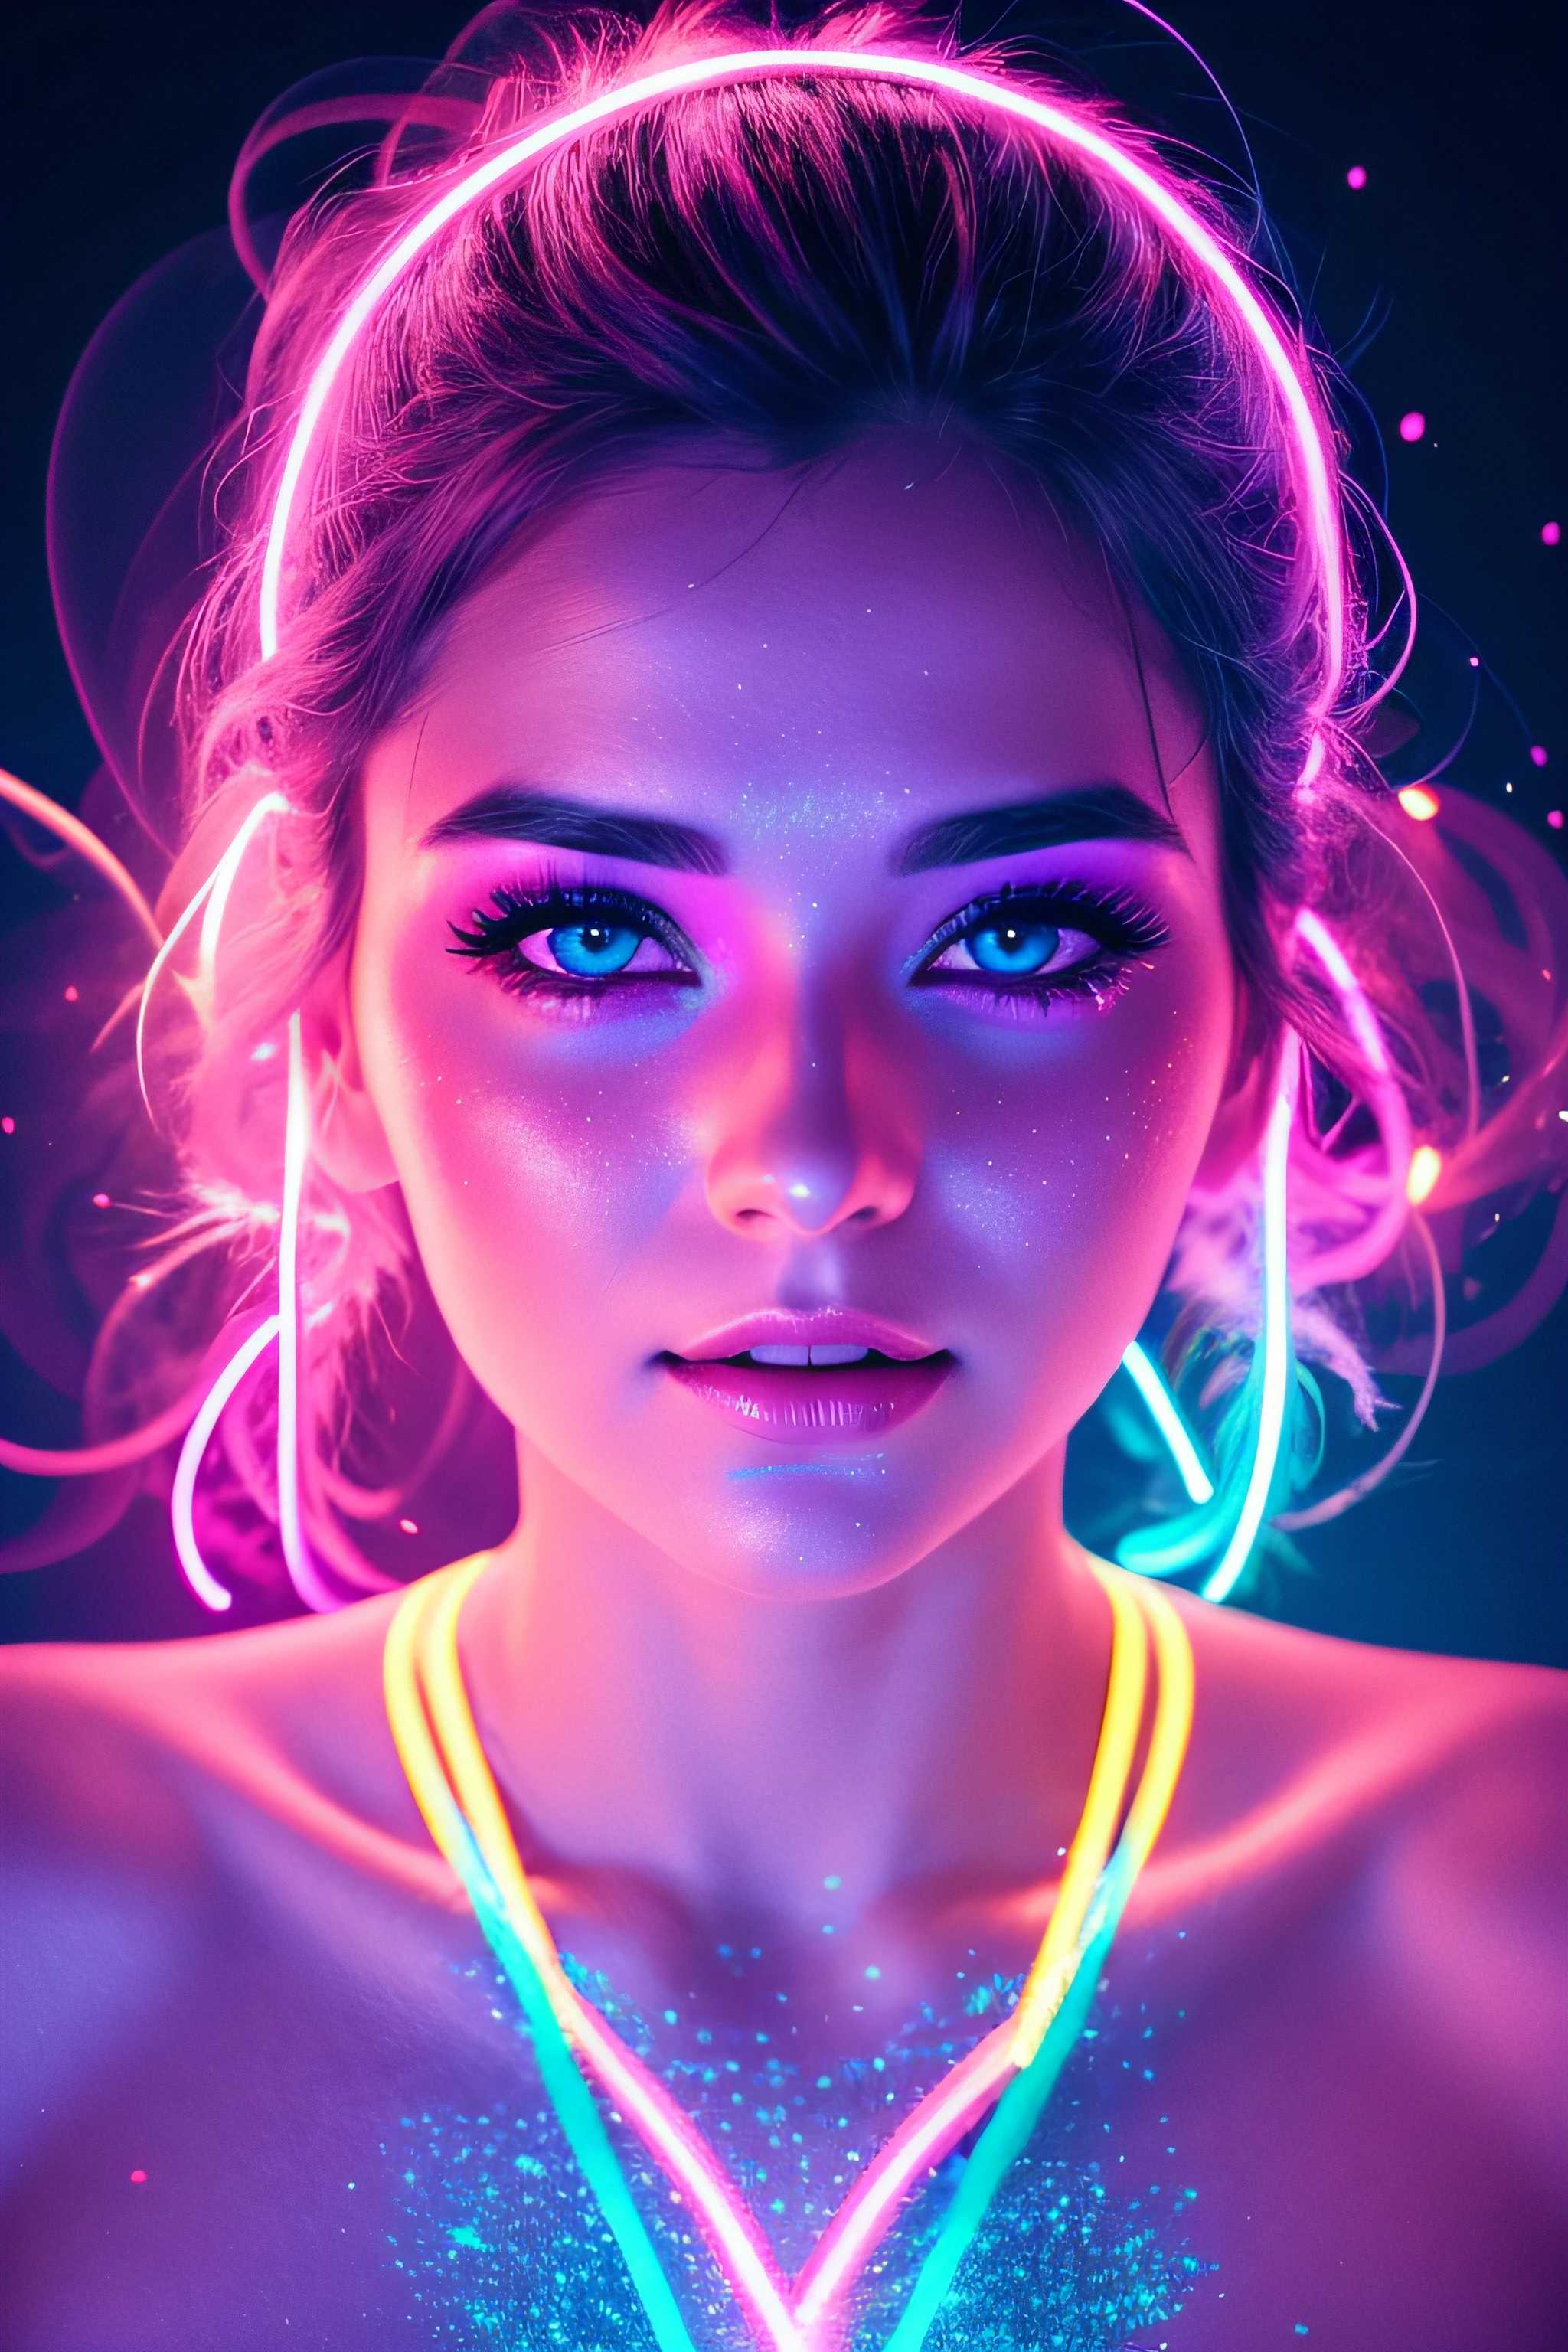 beau visage de femme de 30 ans illuminé par des lumières colorées fond photoréaliste couleurs vives fond de poussière de paillettes rose néon et bleu néon lumineux avec vapeur de fumée rose et bleue